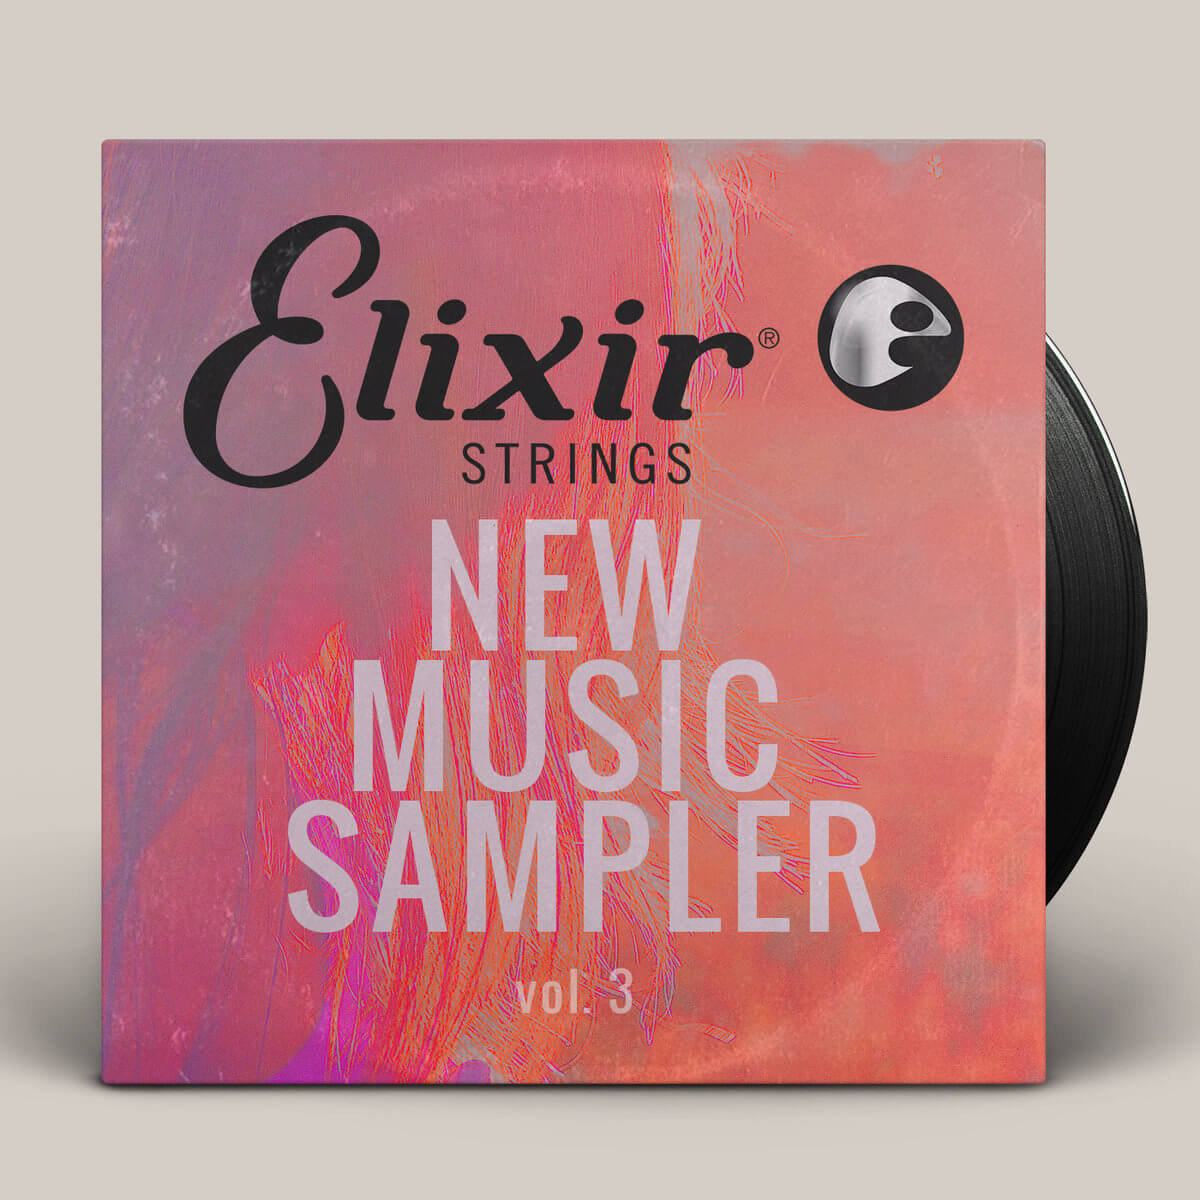 Stream the FREE Elixir Strings New Music Sampler Vol. 3